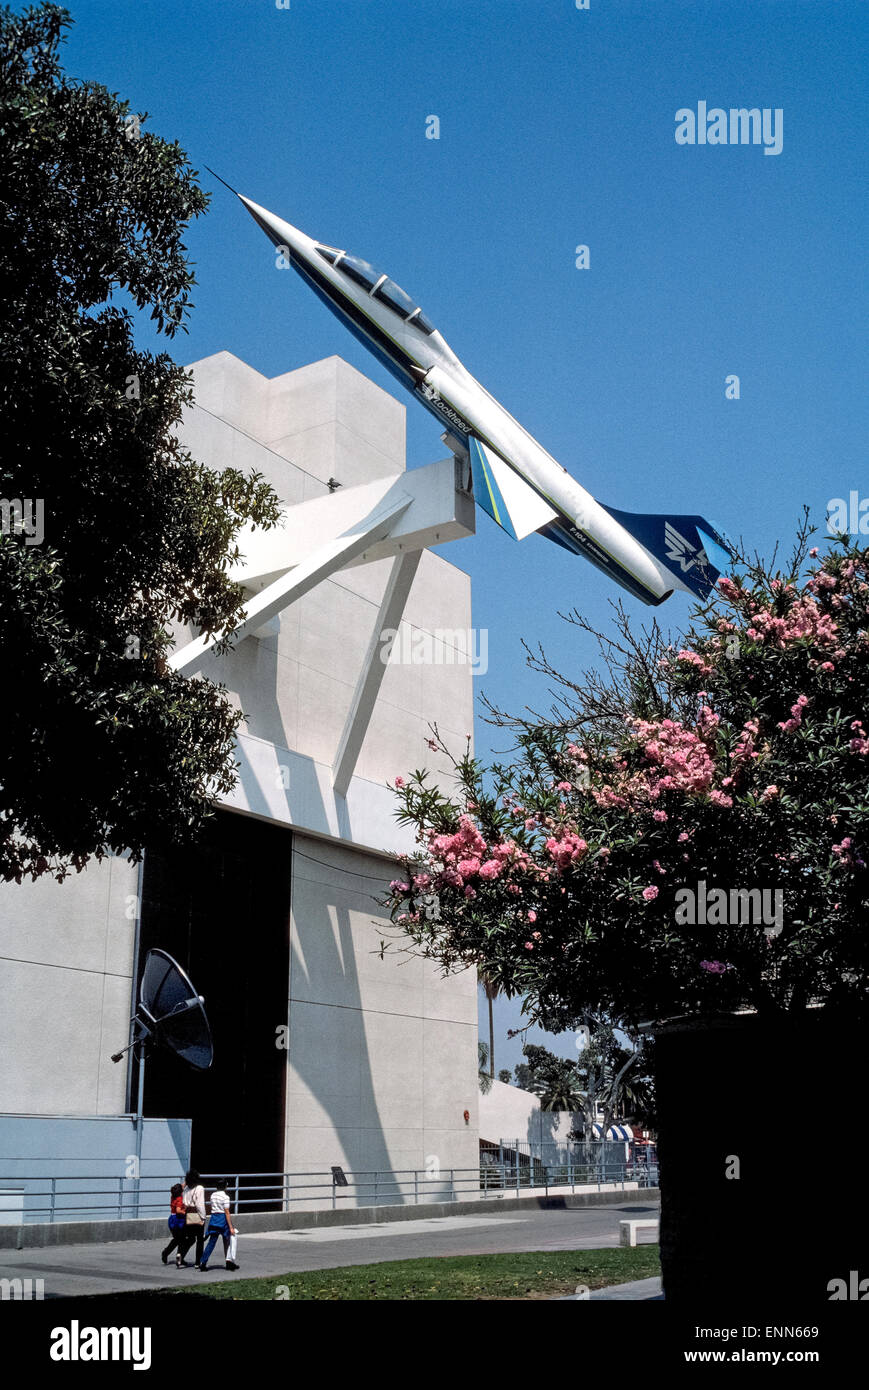 Eine Lockheed F-104 Starfighter, die Überschall-Flugzeug auf der Seite der Skizze Stiftung Galerie für Luft- und Raum zeigt Gebäude an der California Science Center in Los Angeles, Kalifornien, USA montiert ist. Die US Air Force beschafft ca. 300 Starfighter nach der 104 Erstflug 1954.  Es war das erste Flugzeug fliegen zweimal die Geschwindigkeit des Schalls und setzen einen Geschwindigkeits-Weltrekord von 1.404 km/h im Jahr 1959. Ein Jahr später einen Höhenweltrekord von 103.395 Fuß folgten. Das 1984-Gebäude, das Flugzeug unterstützt, ist erste öffentliche Hauptwerk von renommierten Architekten Frank Gehry. Stockfoto